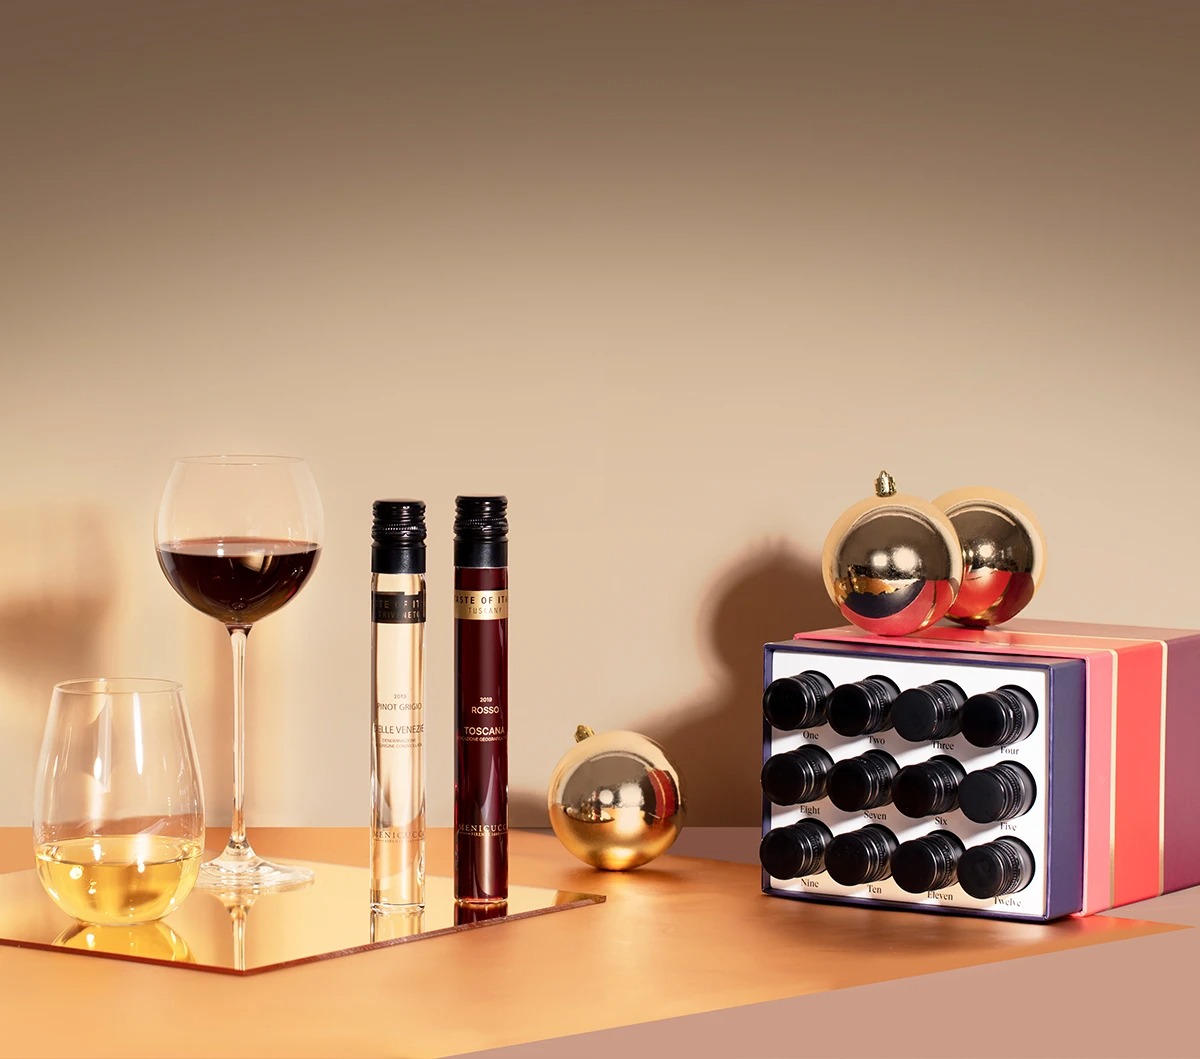 聖誕倒數月曆 advent calendar 聖誕月曆 聖誕禮物 聖誕套裝Vinebox 12 Nights of Wine - Holiday